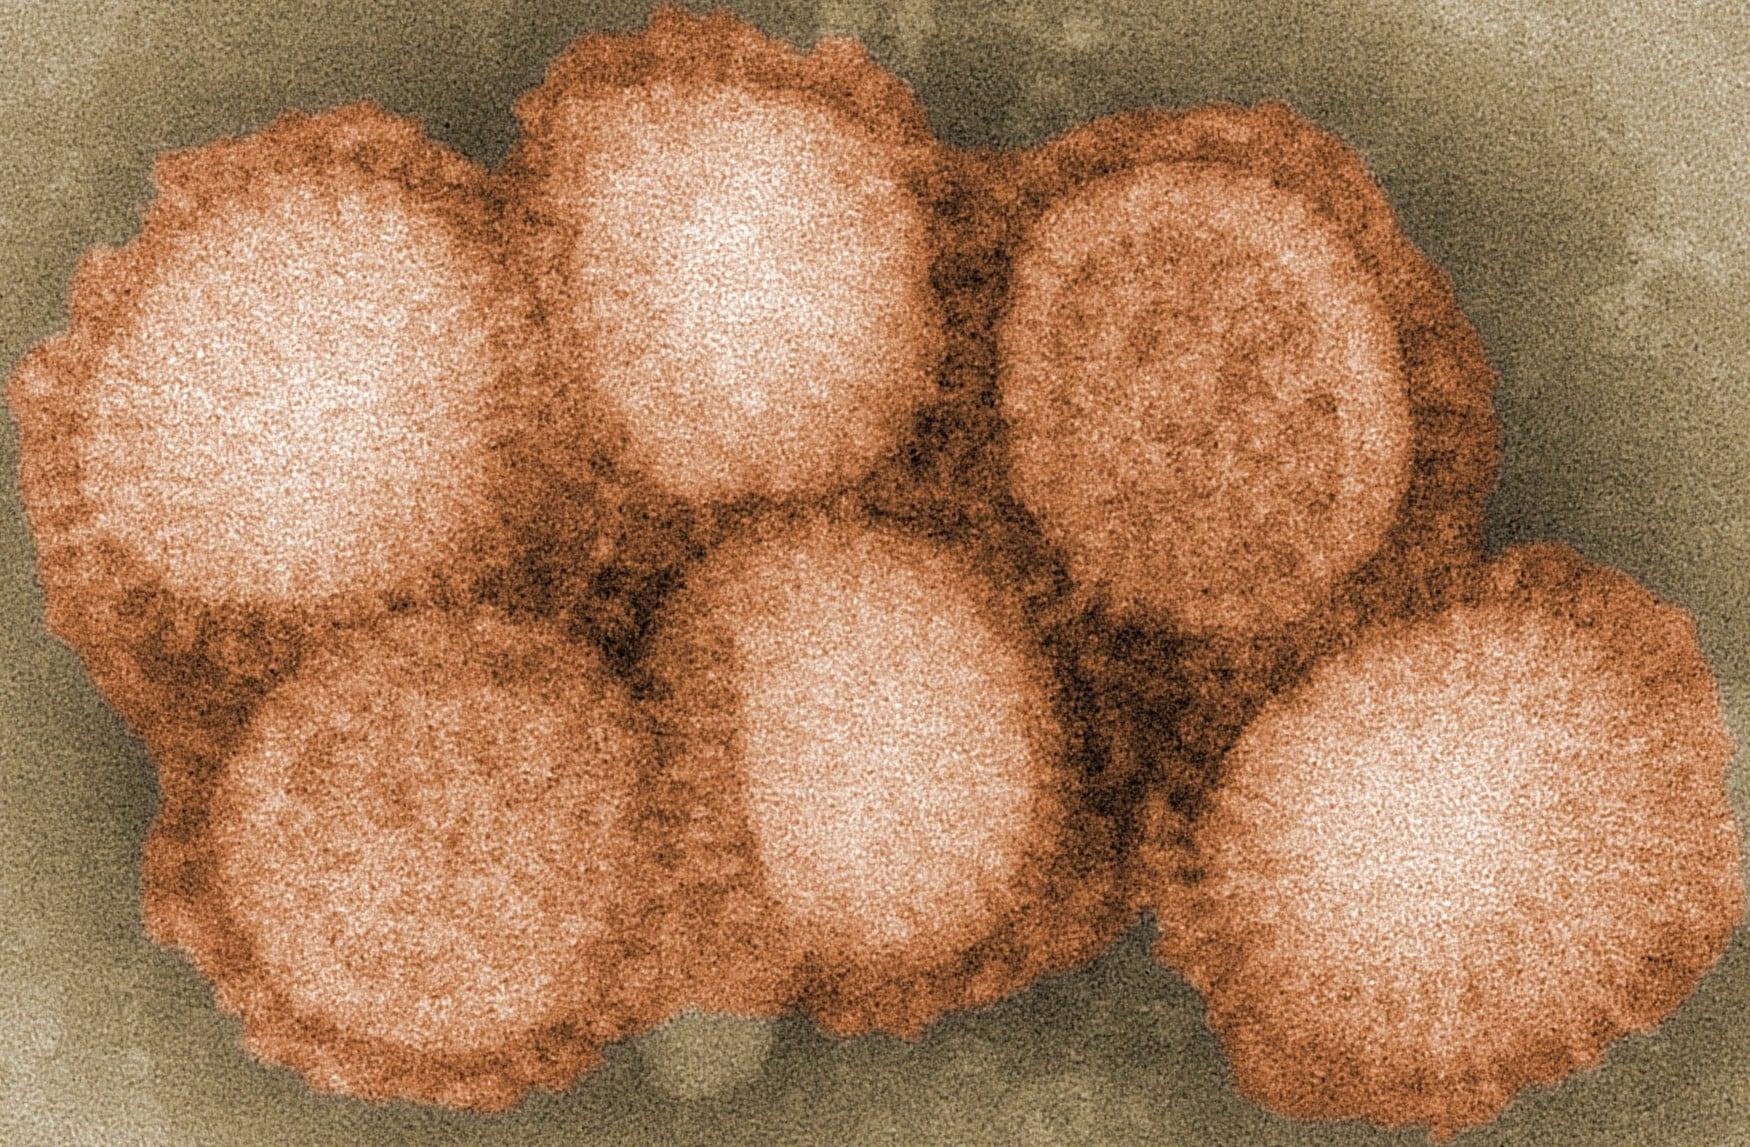 Кишечные бактерии усиливают вакцину от гриппа